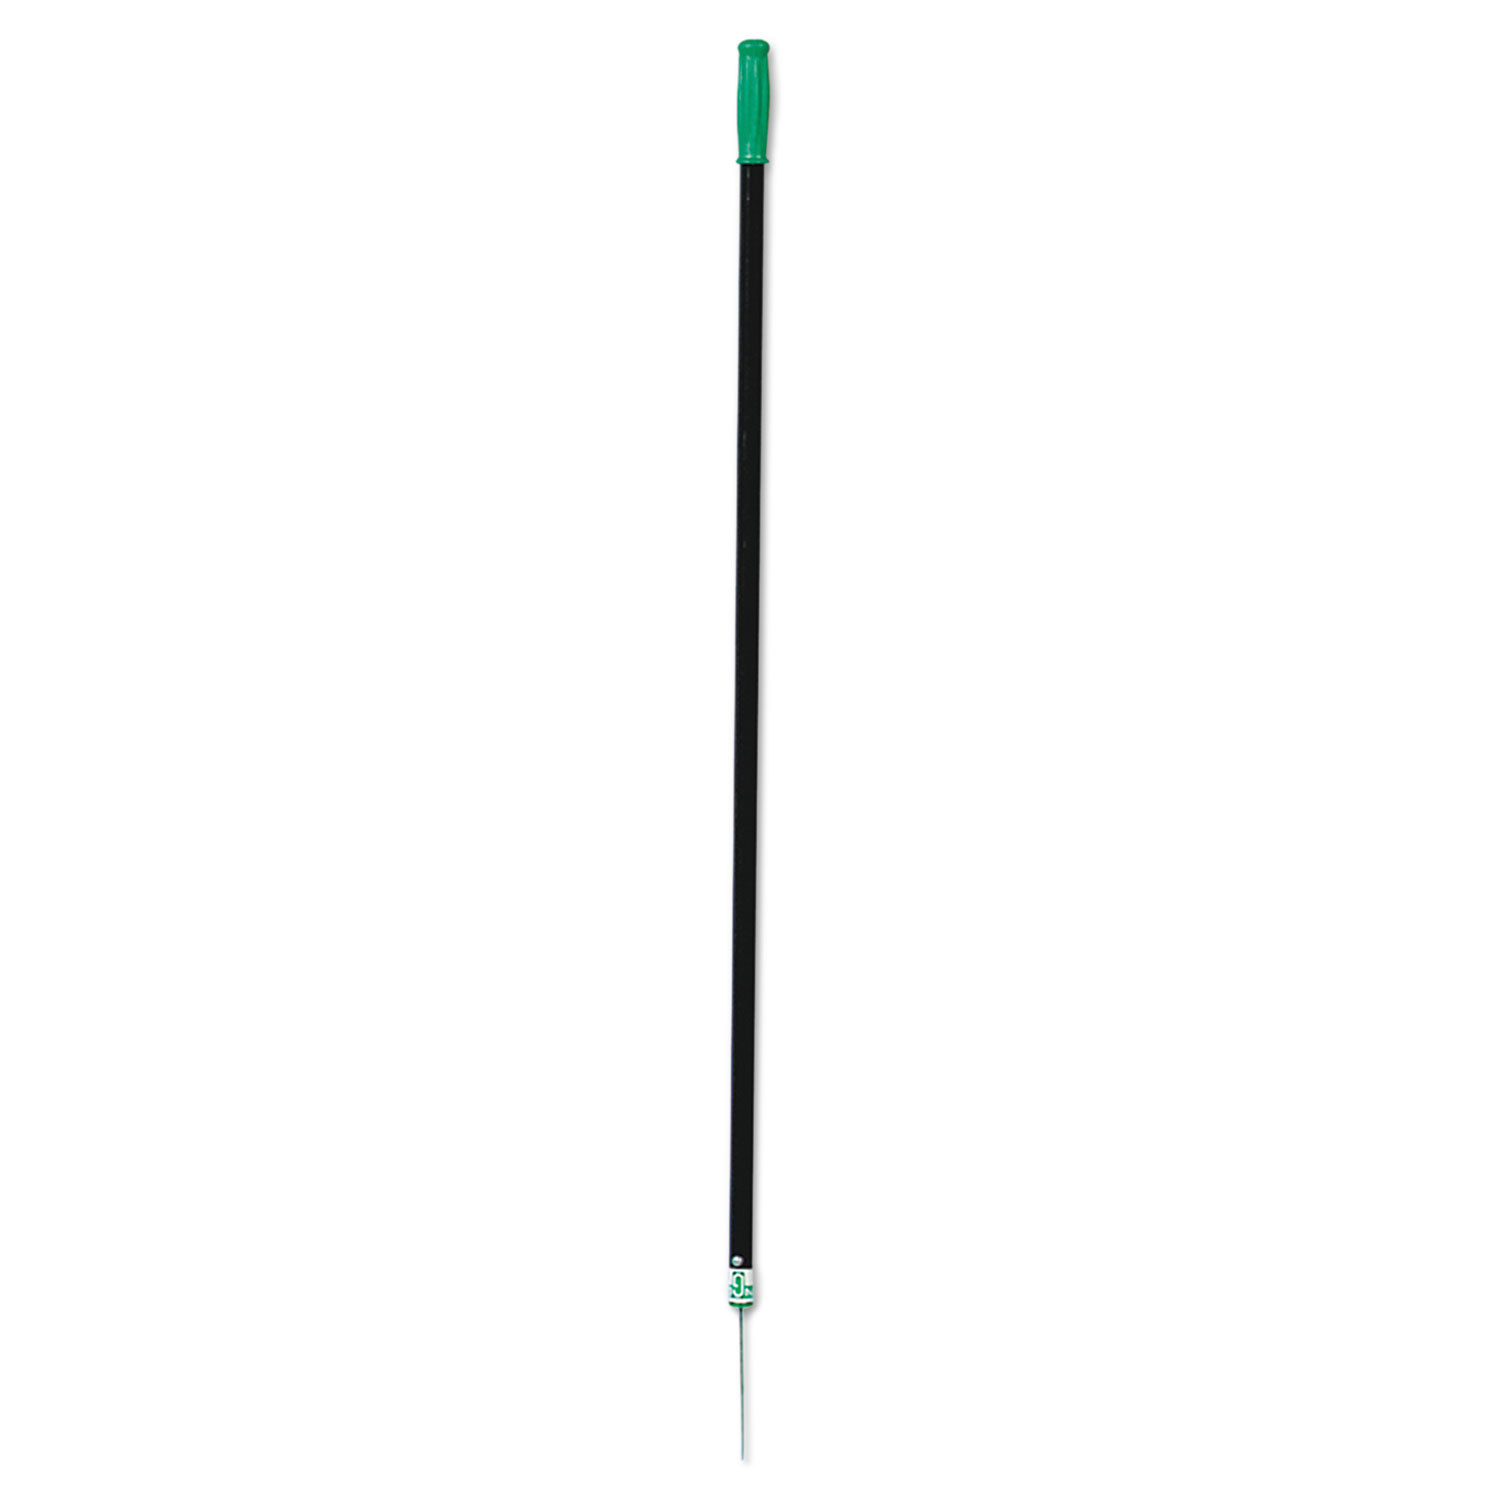 People's Paper Picker Pin Pole, 42in, Black/Green